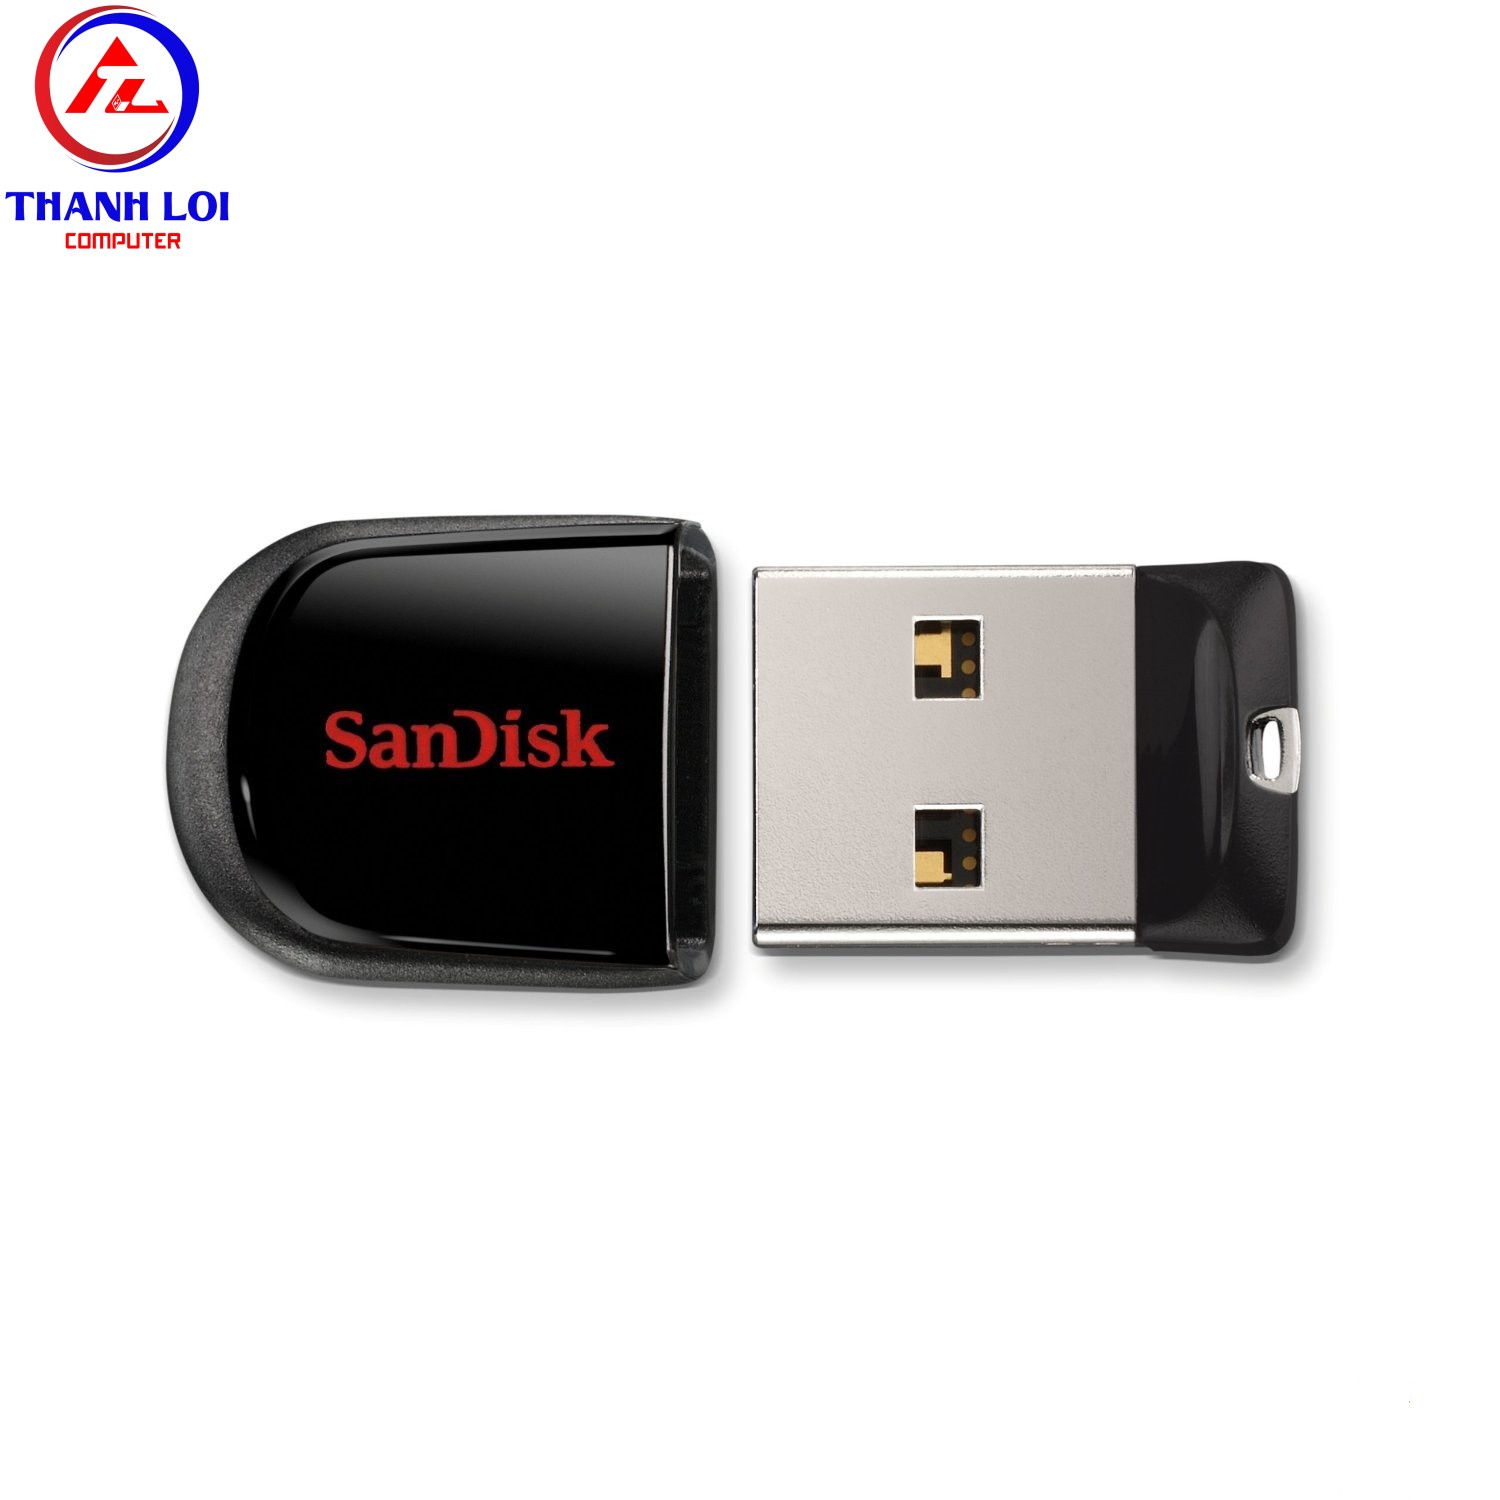 USB SanDisk Cruzer Fit CZ33 (SDCZ33) 64GB - USB 2.0